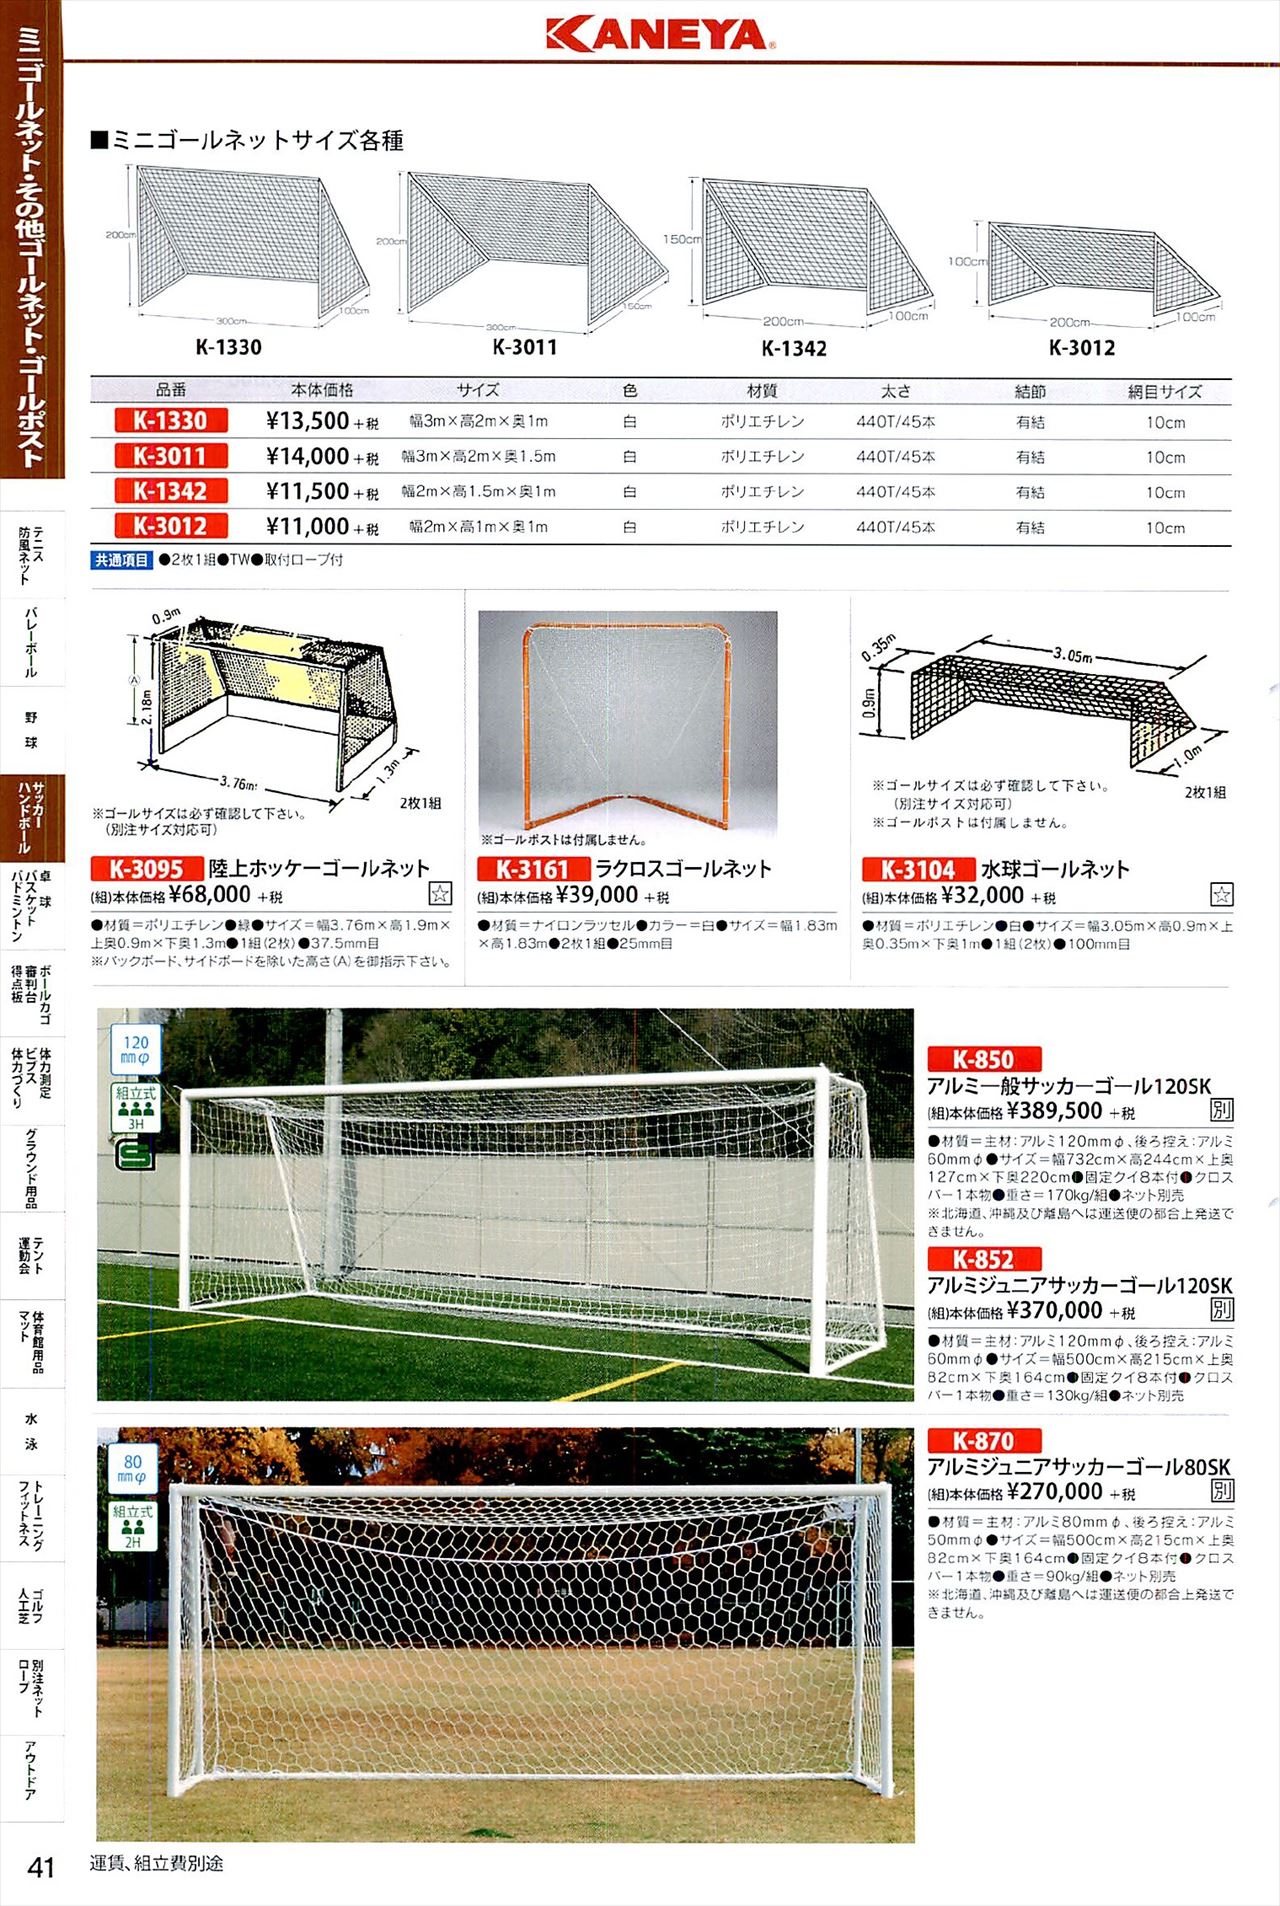 サッカーゴールポストは、鐘屋産業2020カタログ の ページ41 に掲載